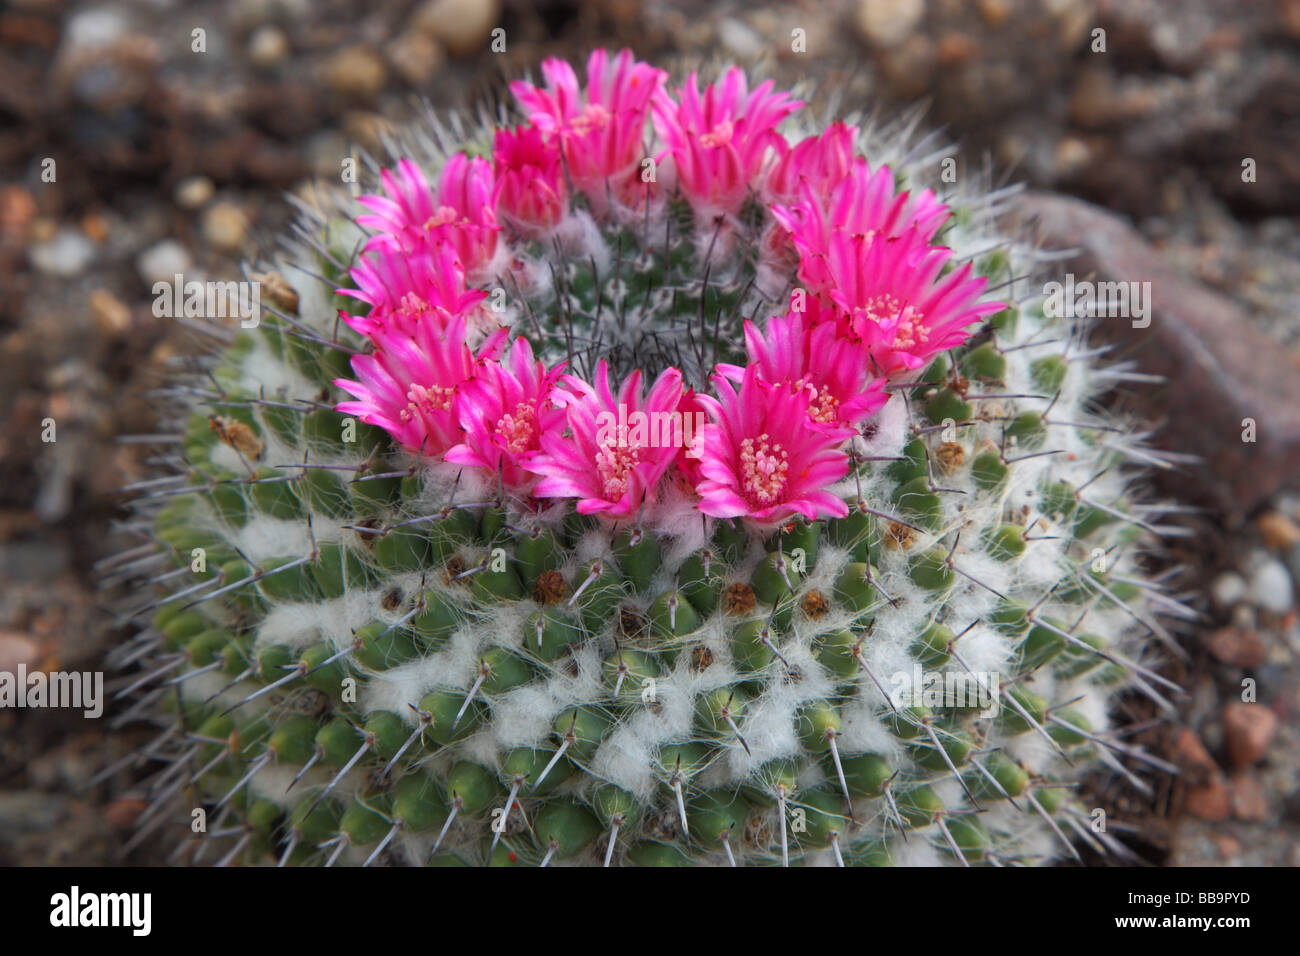 Cactus Mammillaria mammillaria sempervivi flowers blooming Stock Photo